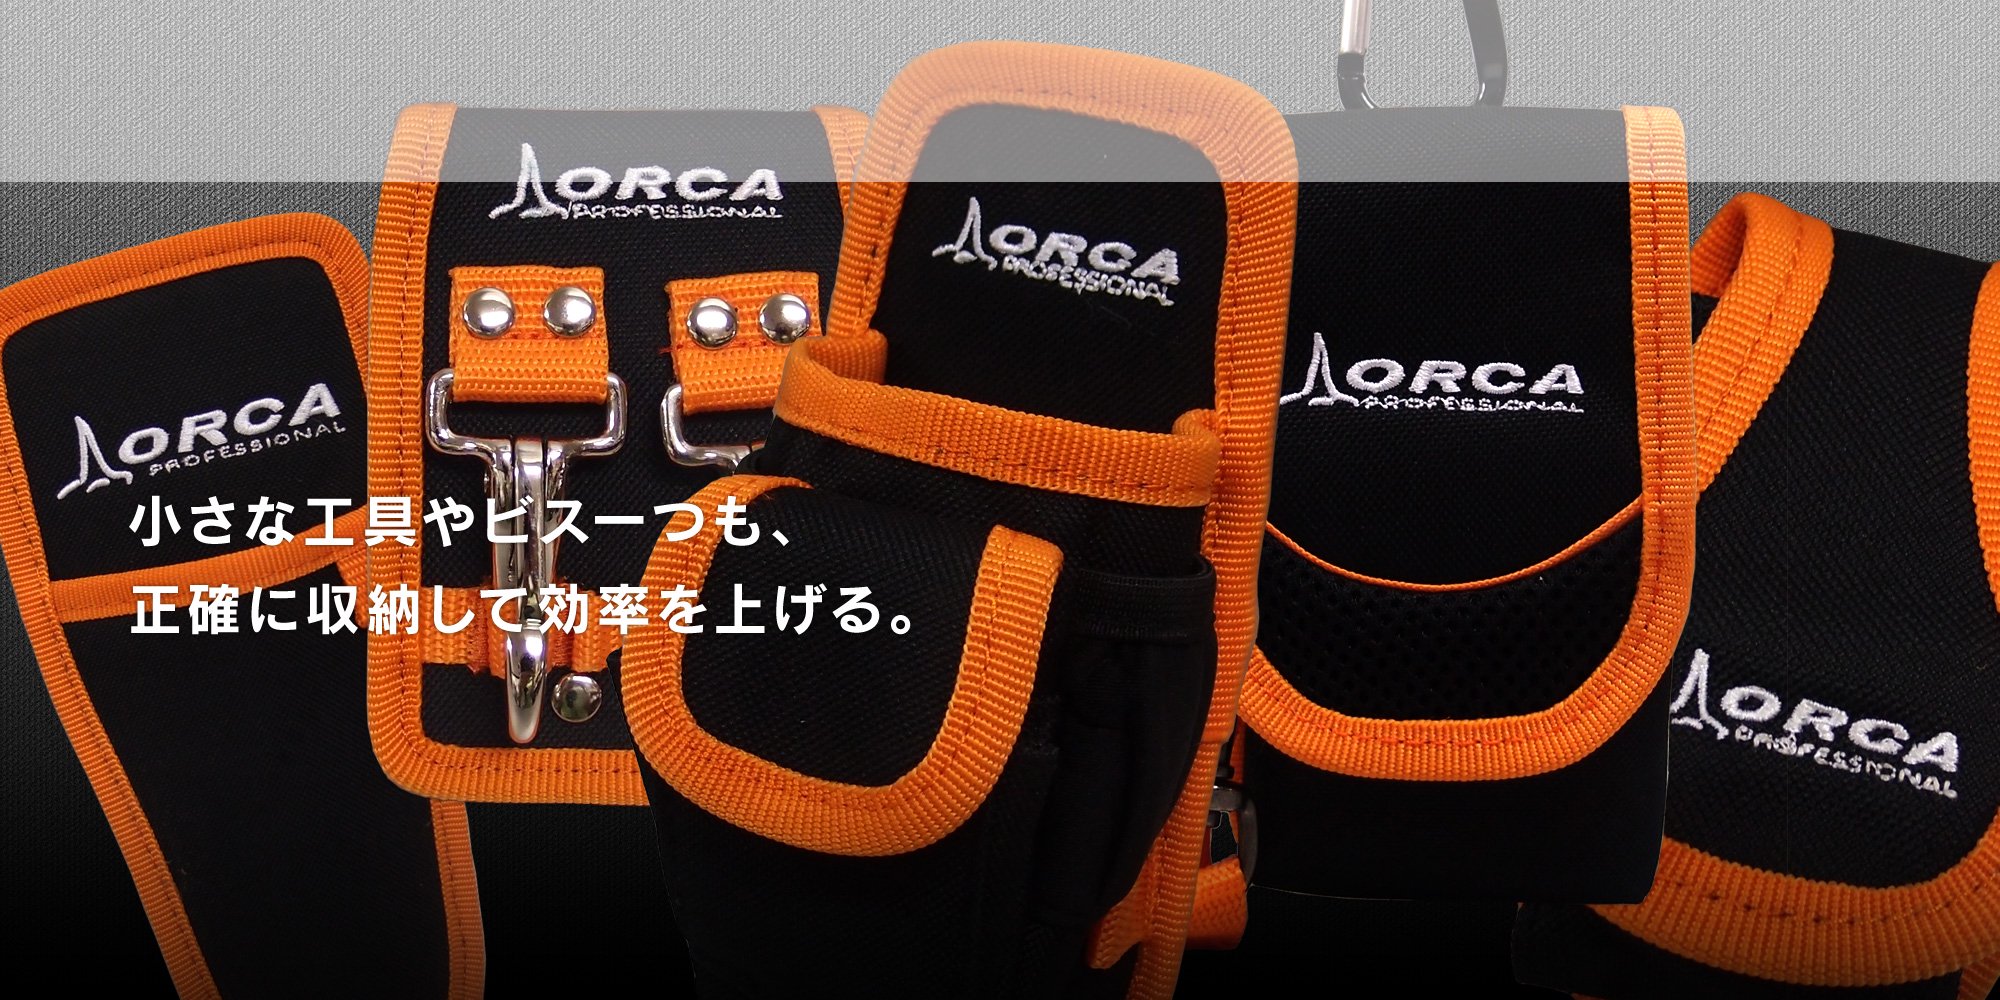 ボナカジャパン オルカ ORCA ロツールバッグ MB-Z1-